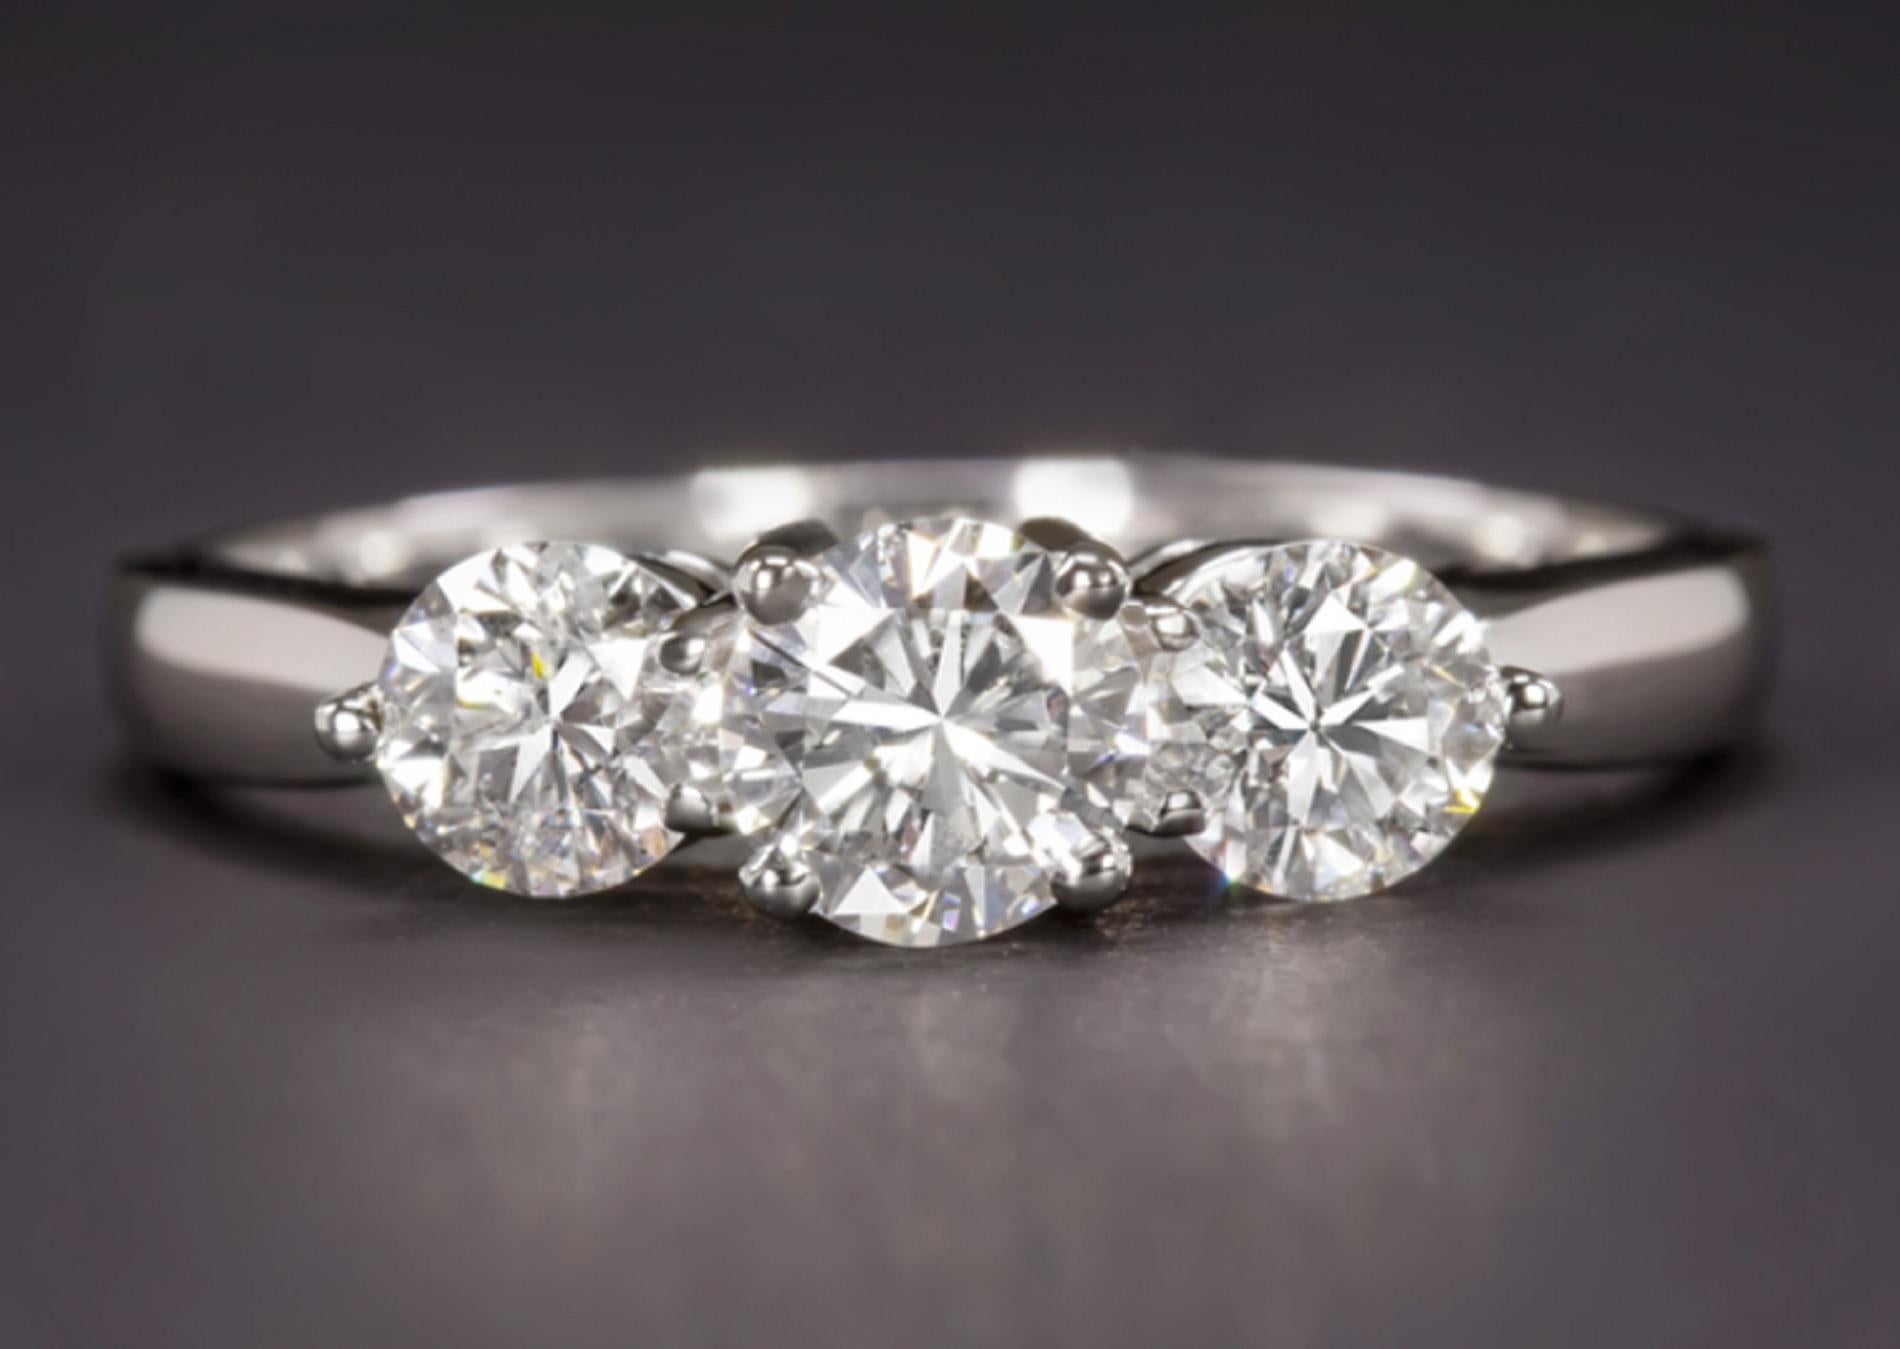 cette magnifique bague de fiançailles en diamant allie un éclat saisissant à un design éternellement élégant. Le diamant central, d'une valeur de 0,47 ct, est totalement pur, incolore et de taille idéale avec un jeu de lumière étonnant. Il est